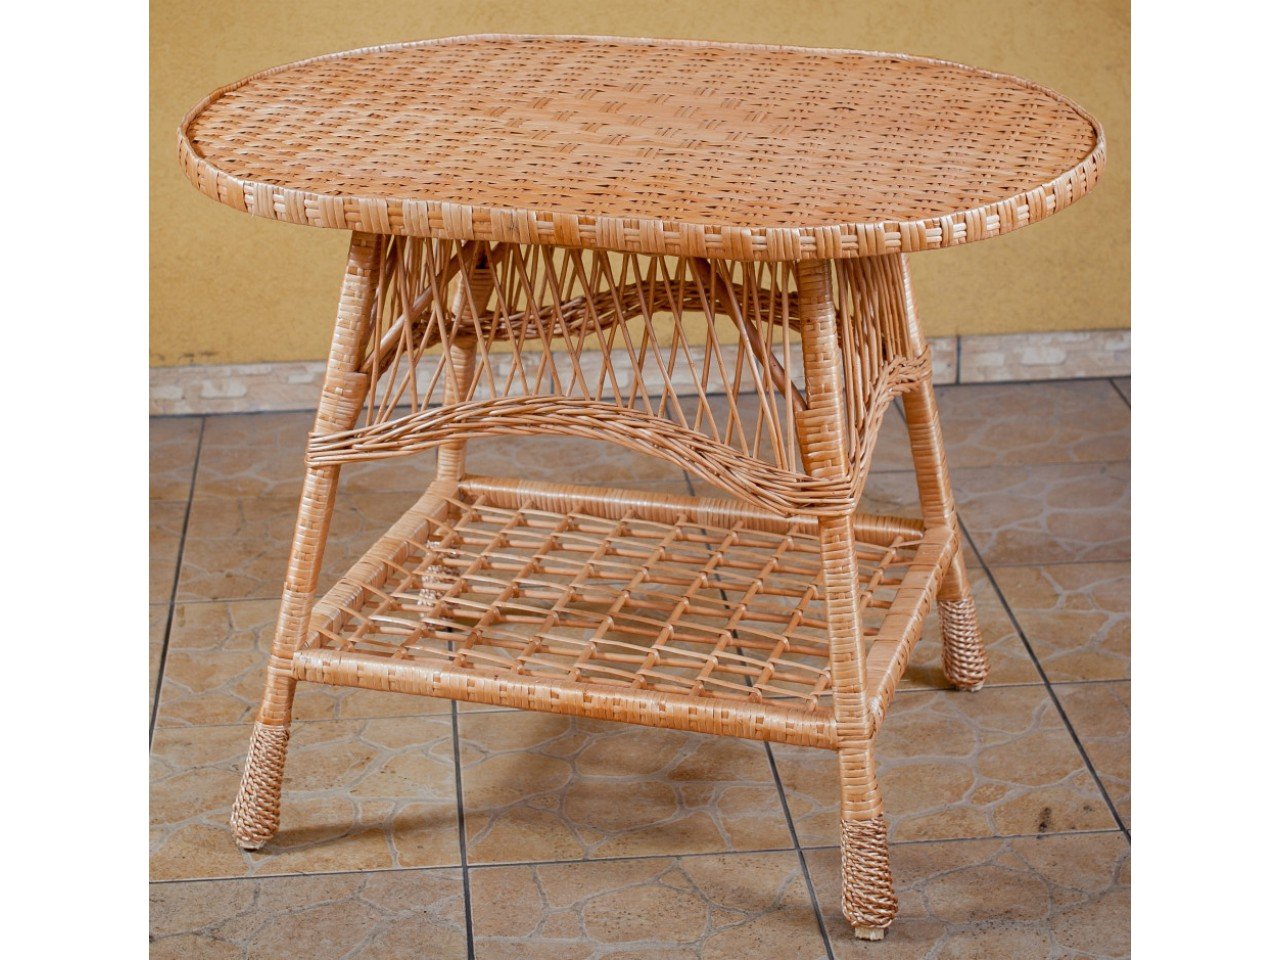 Столик лоза. Мебель из ивовой лозы. Плетеный столик. Плетеные столы из лозы. Плетёная мебель из лозы.